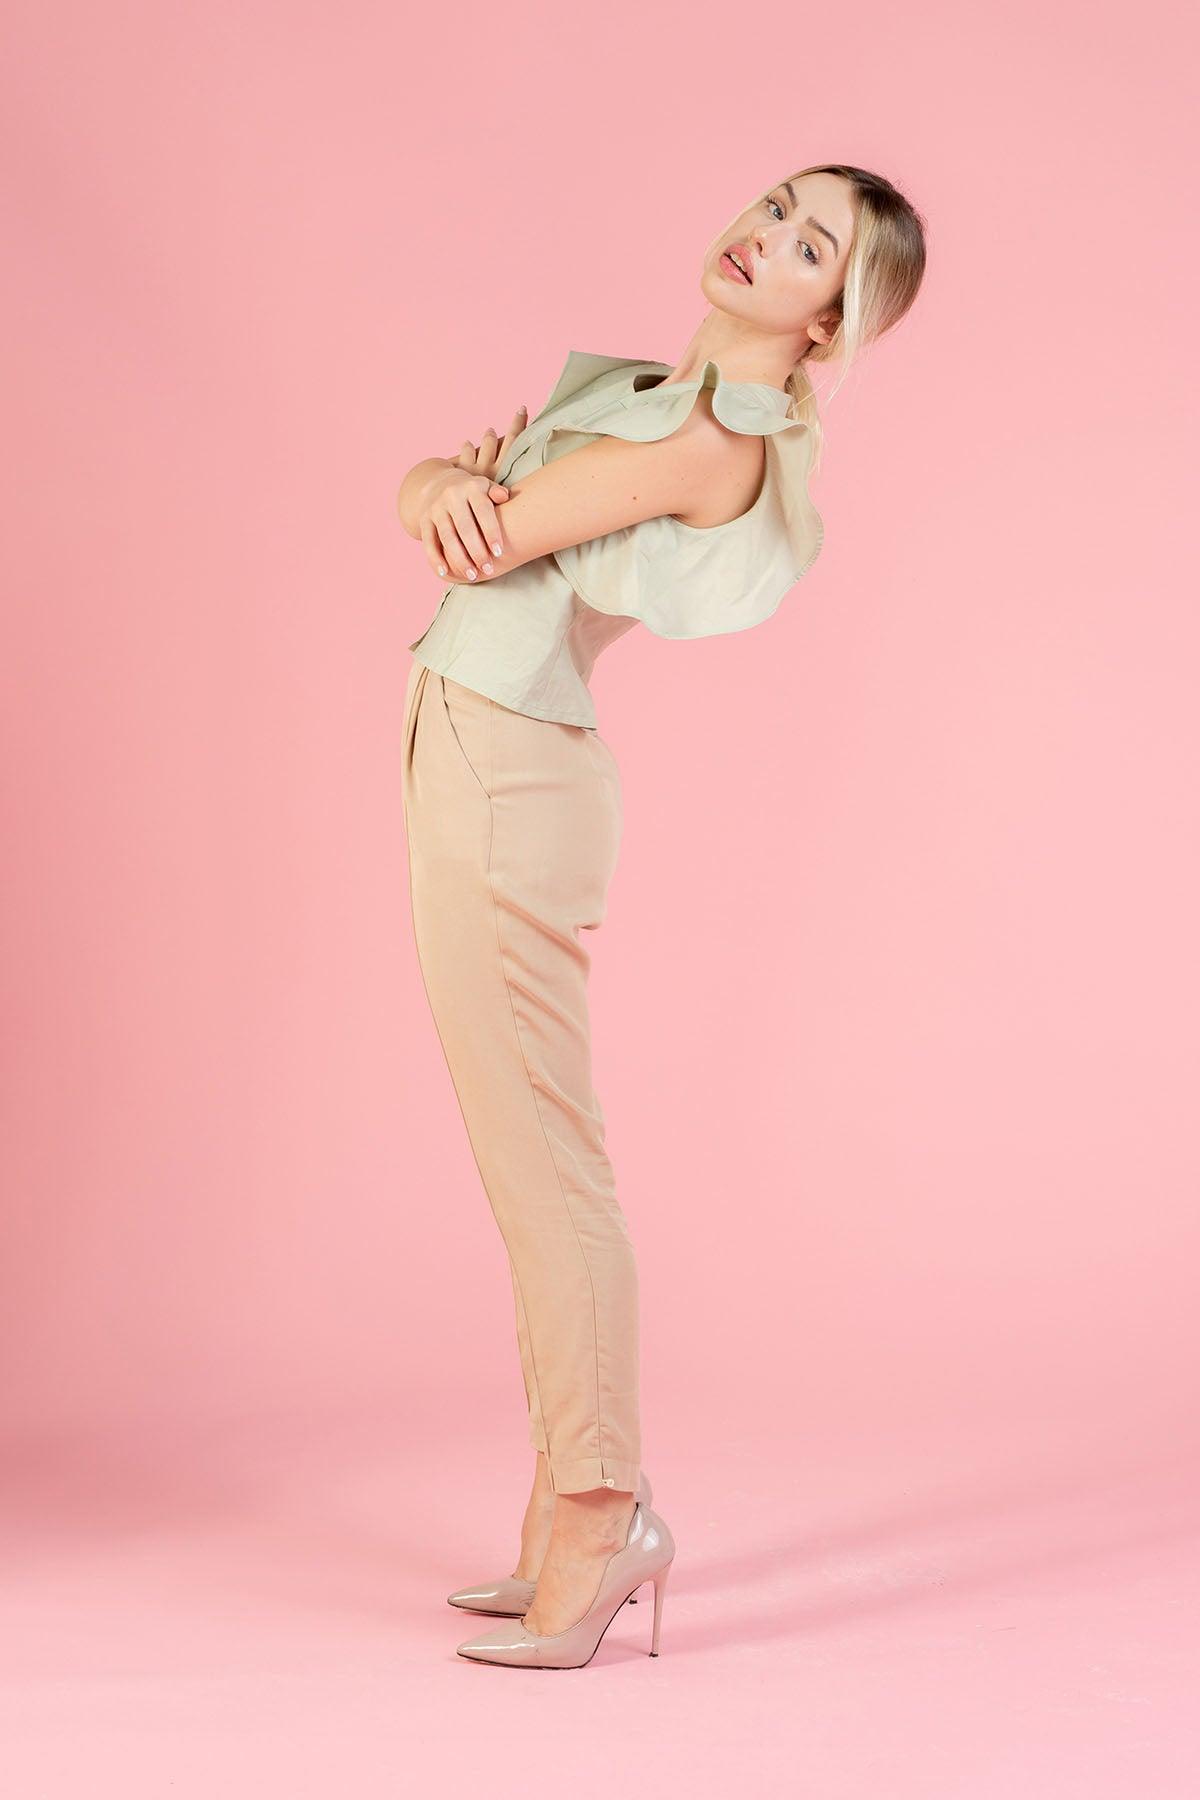 Pantalone Sara tencel lyocell beige modello classico con tasche moda etica artigianale brand malia lab abbigliamento biologico sostenibile pantaloni sartoriali su misura pantaloni ecosostenibili donna dettaglio laterale